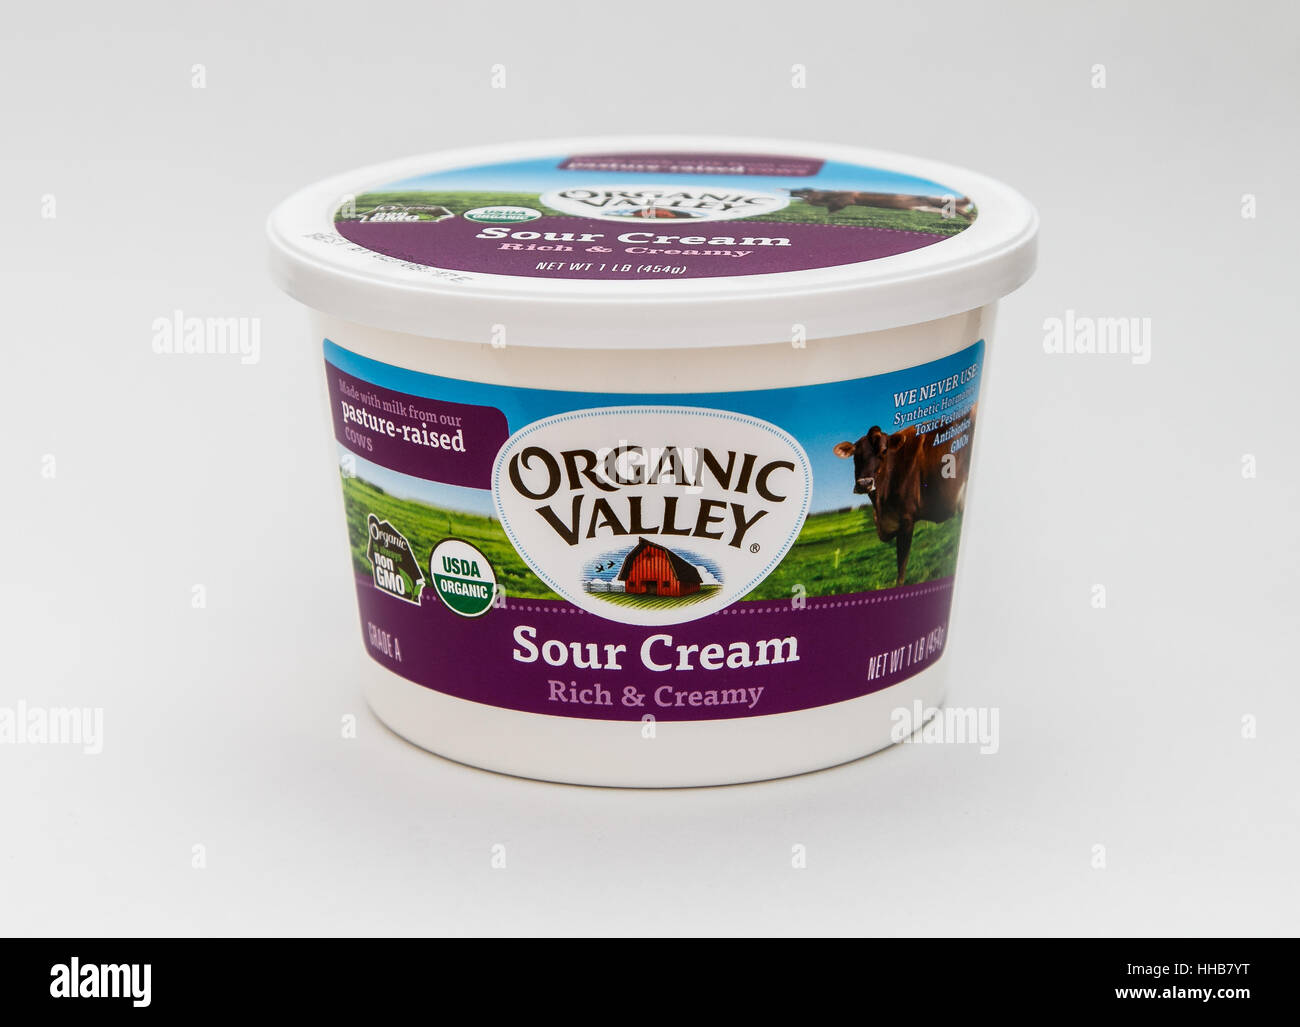 Un seul pot de crème sure par Organic Valley est vu contre l'arrière-plan blanc. Banque D'Images